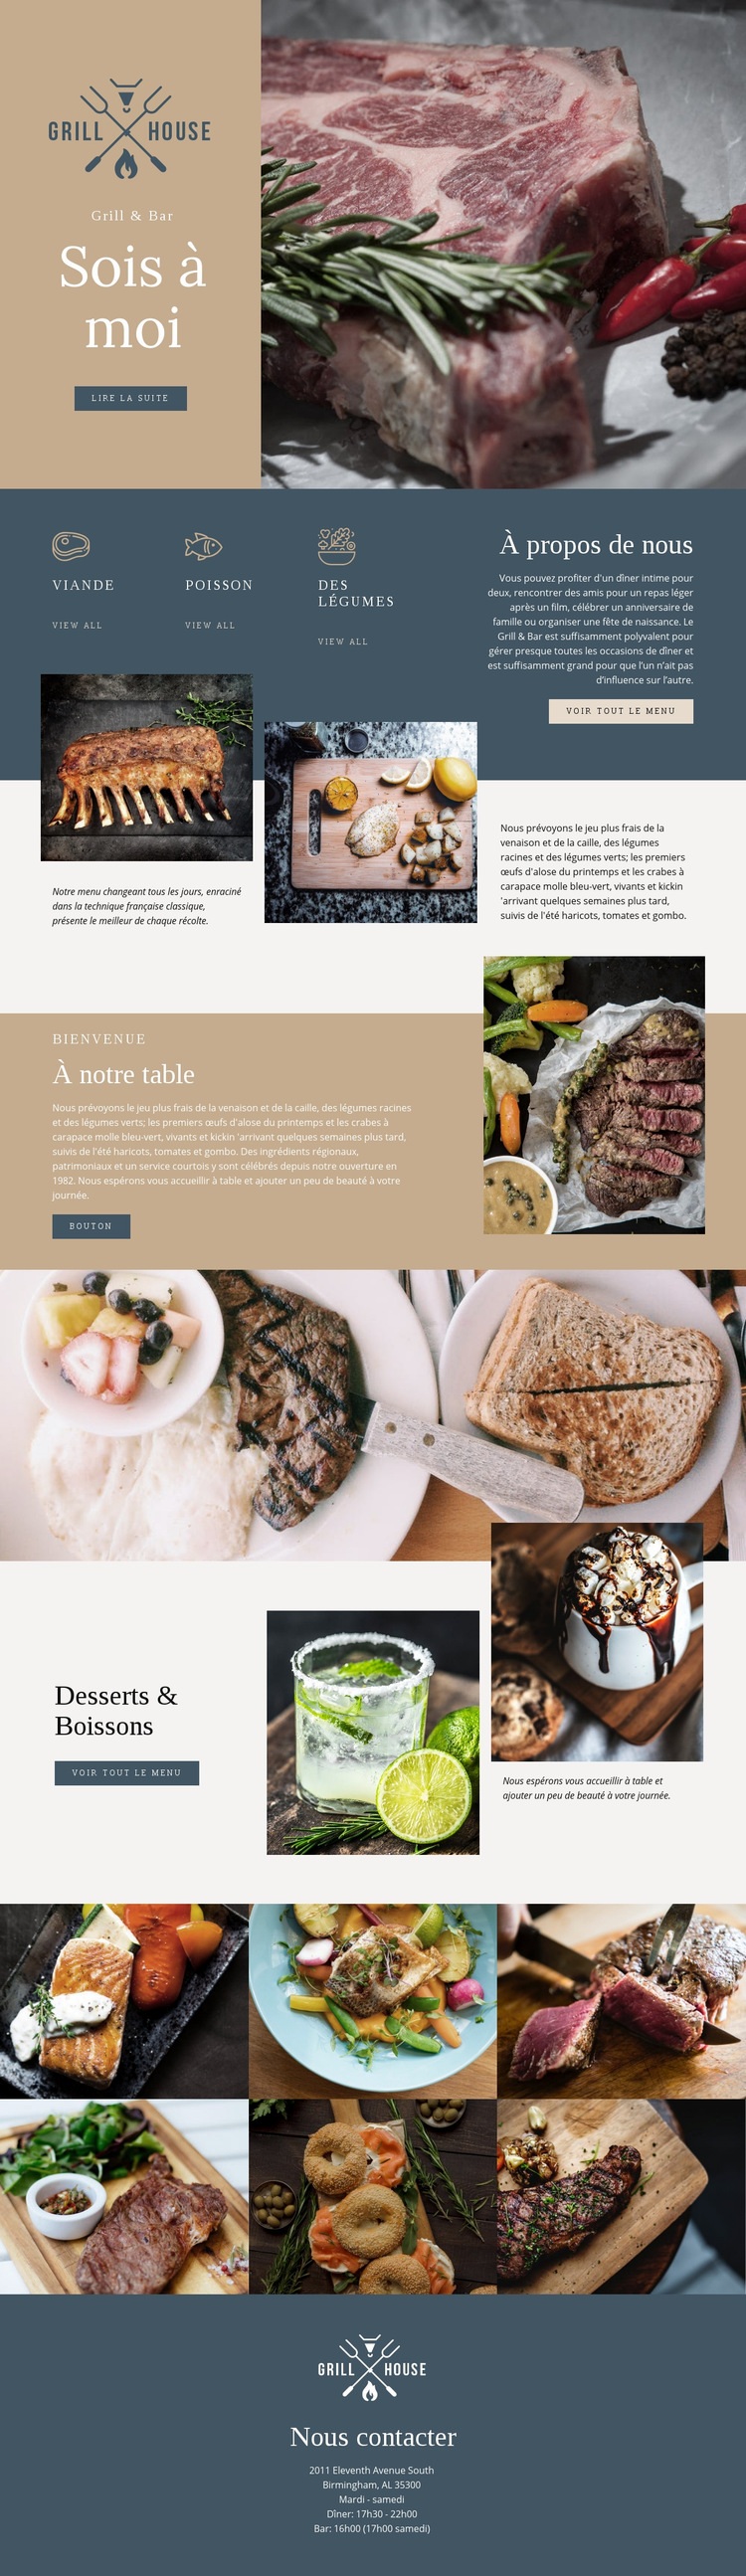 Le meilleur restaurant de grillades Modèle HTML5